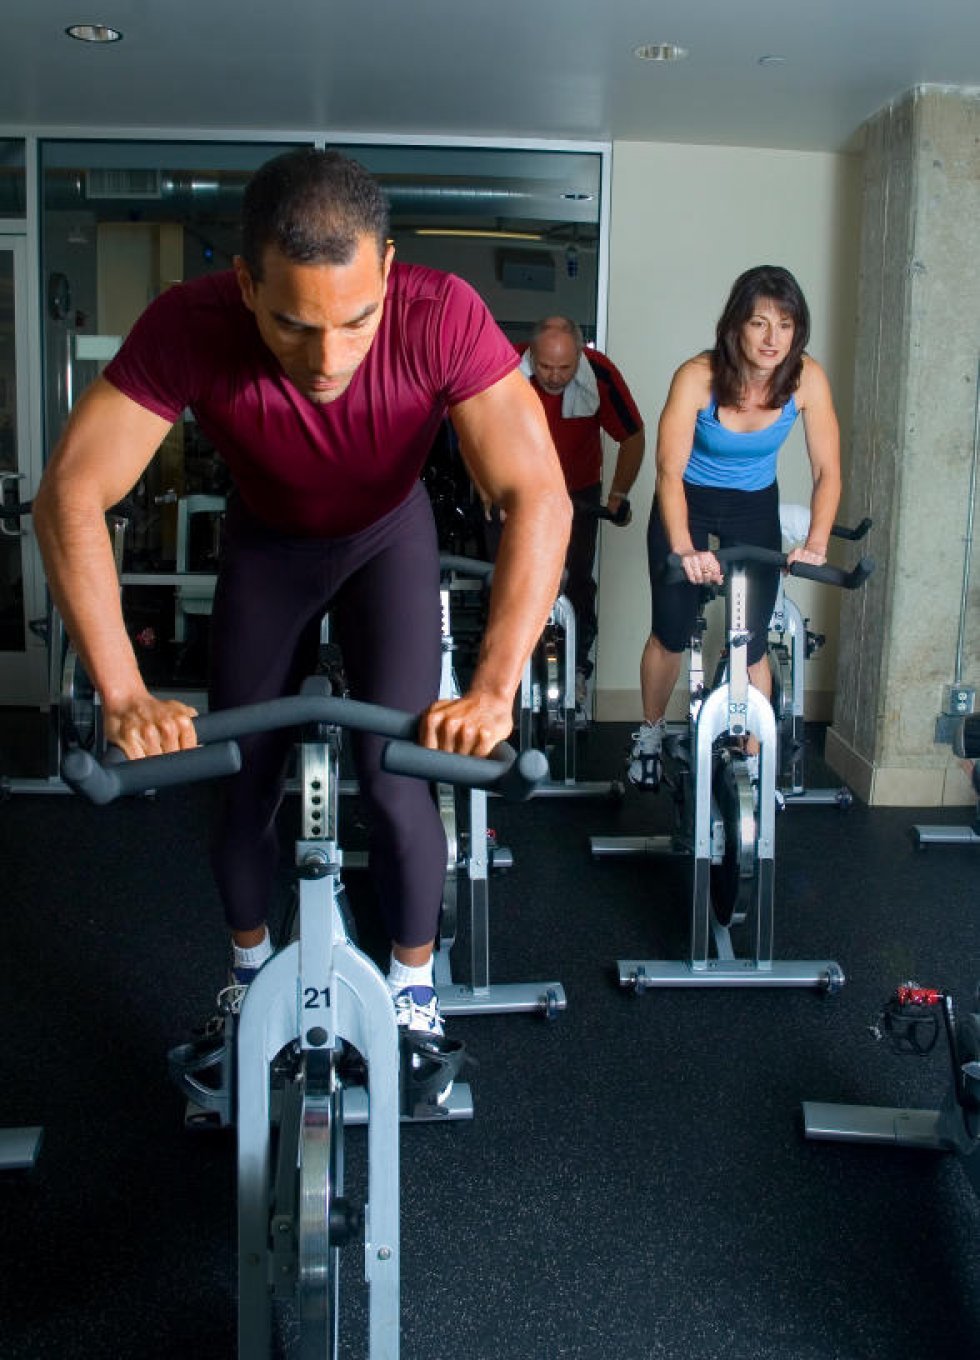 8 fede øvelser, der forbrænder flere kalorier end løb - OG giver muskler